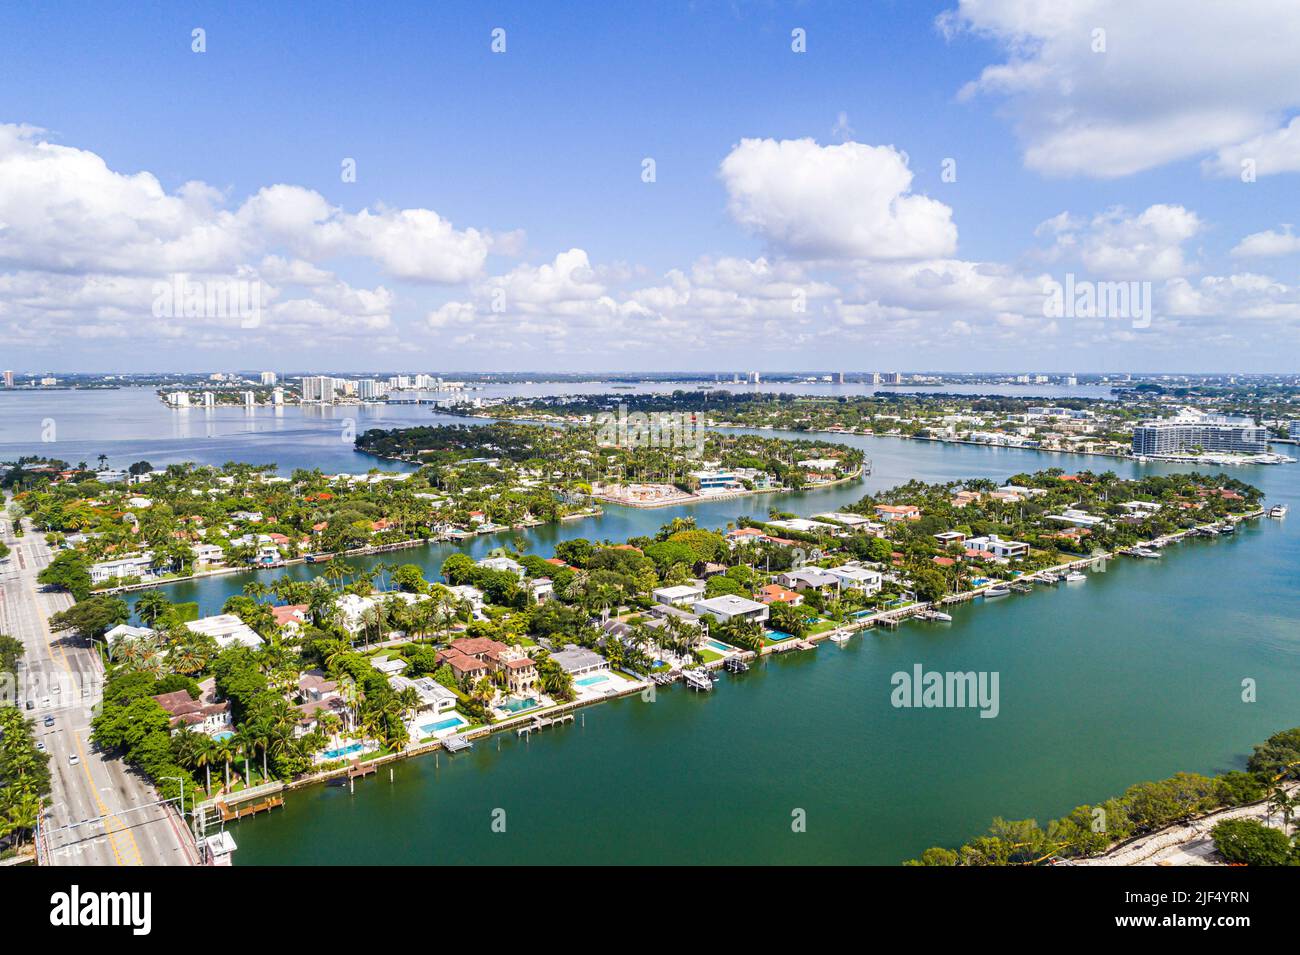 Miami Beach Florida, Luftaufnahme von oben, Biscayne Bay Indian Creek 63. Street, La Gorce Island Allison Island Häuser Häuser Häuser Villen Residenz Stockfoto